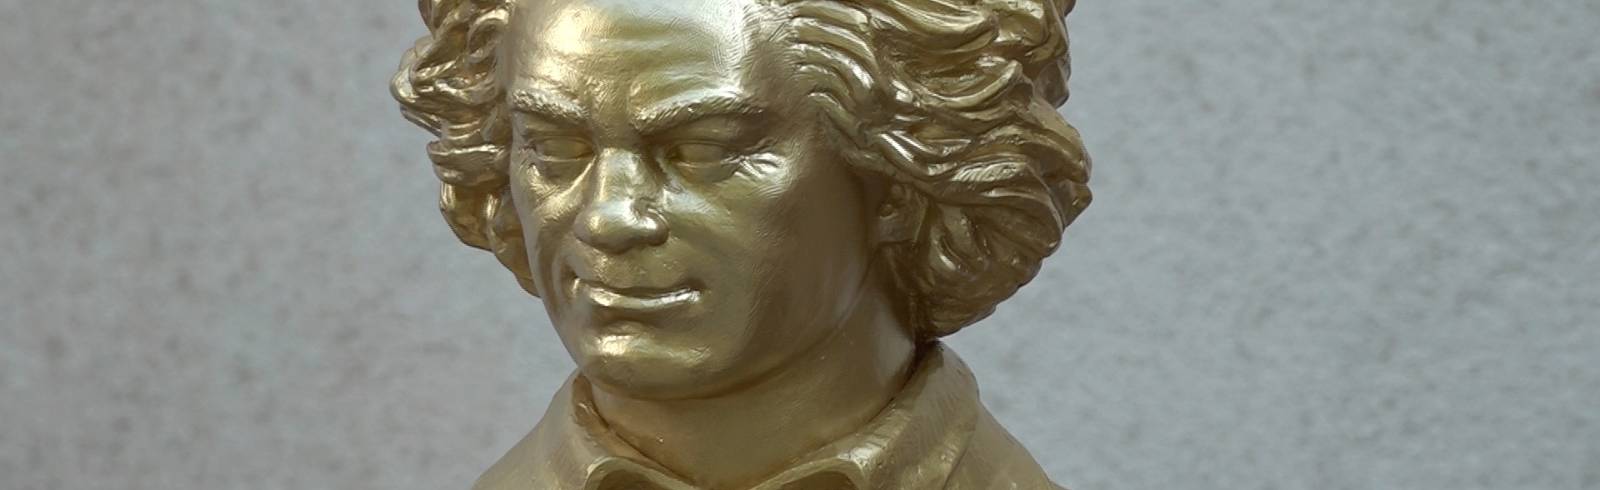 Beethoven-Statue für Wien